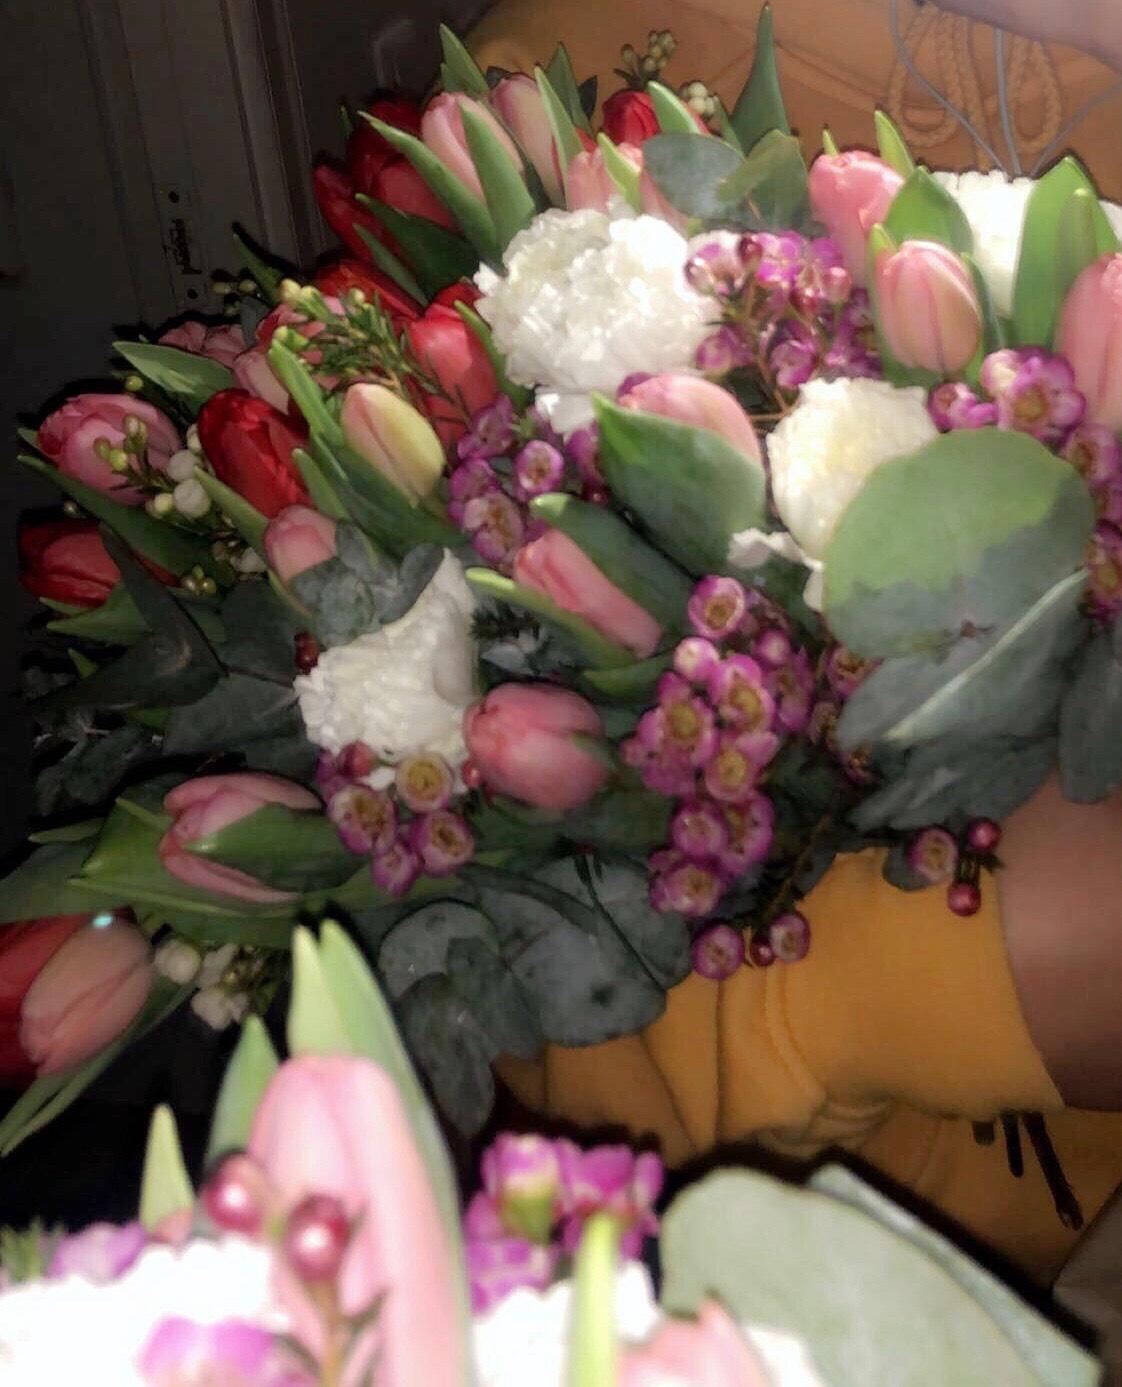 Blommorna kostade sammanlagt 750 kronor och hon vet inte vem som skickade dem.